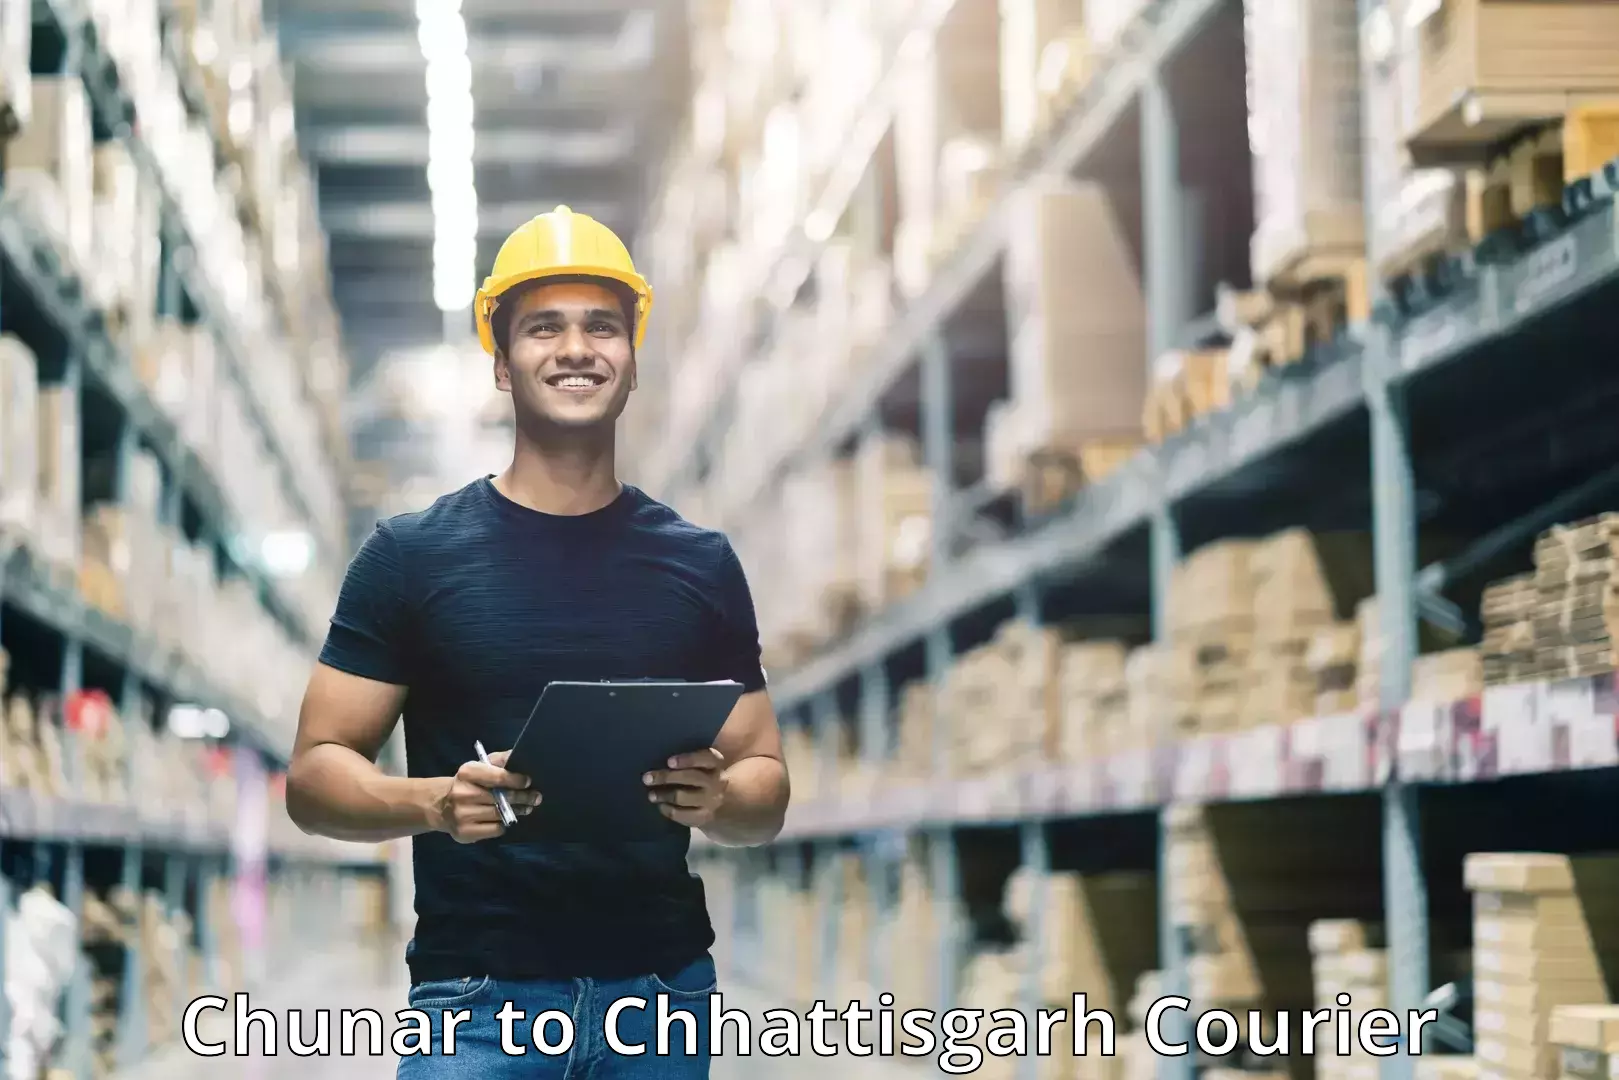 Customer-focused courier Chunar to Jashpur